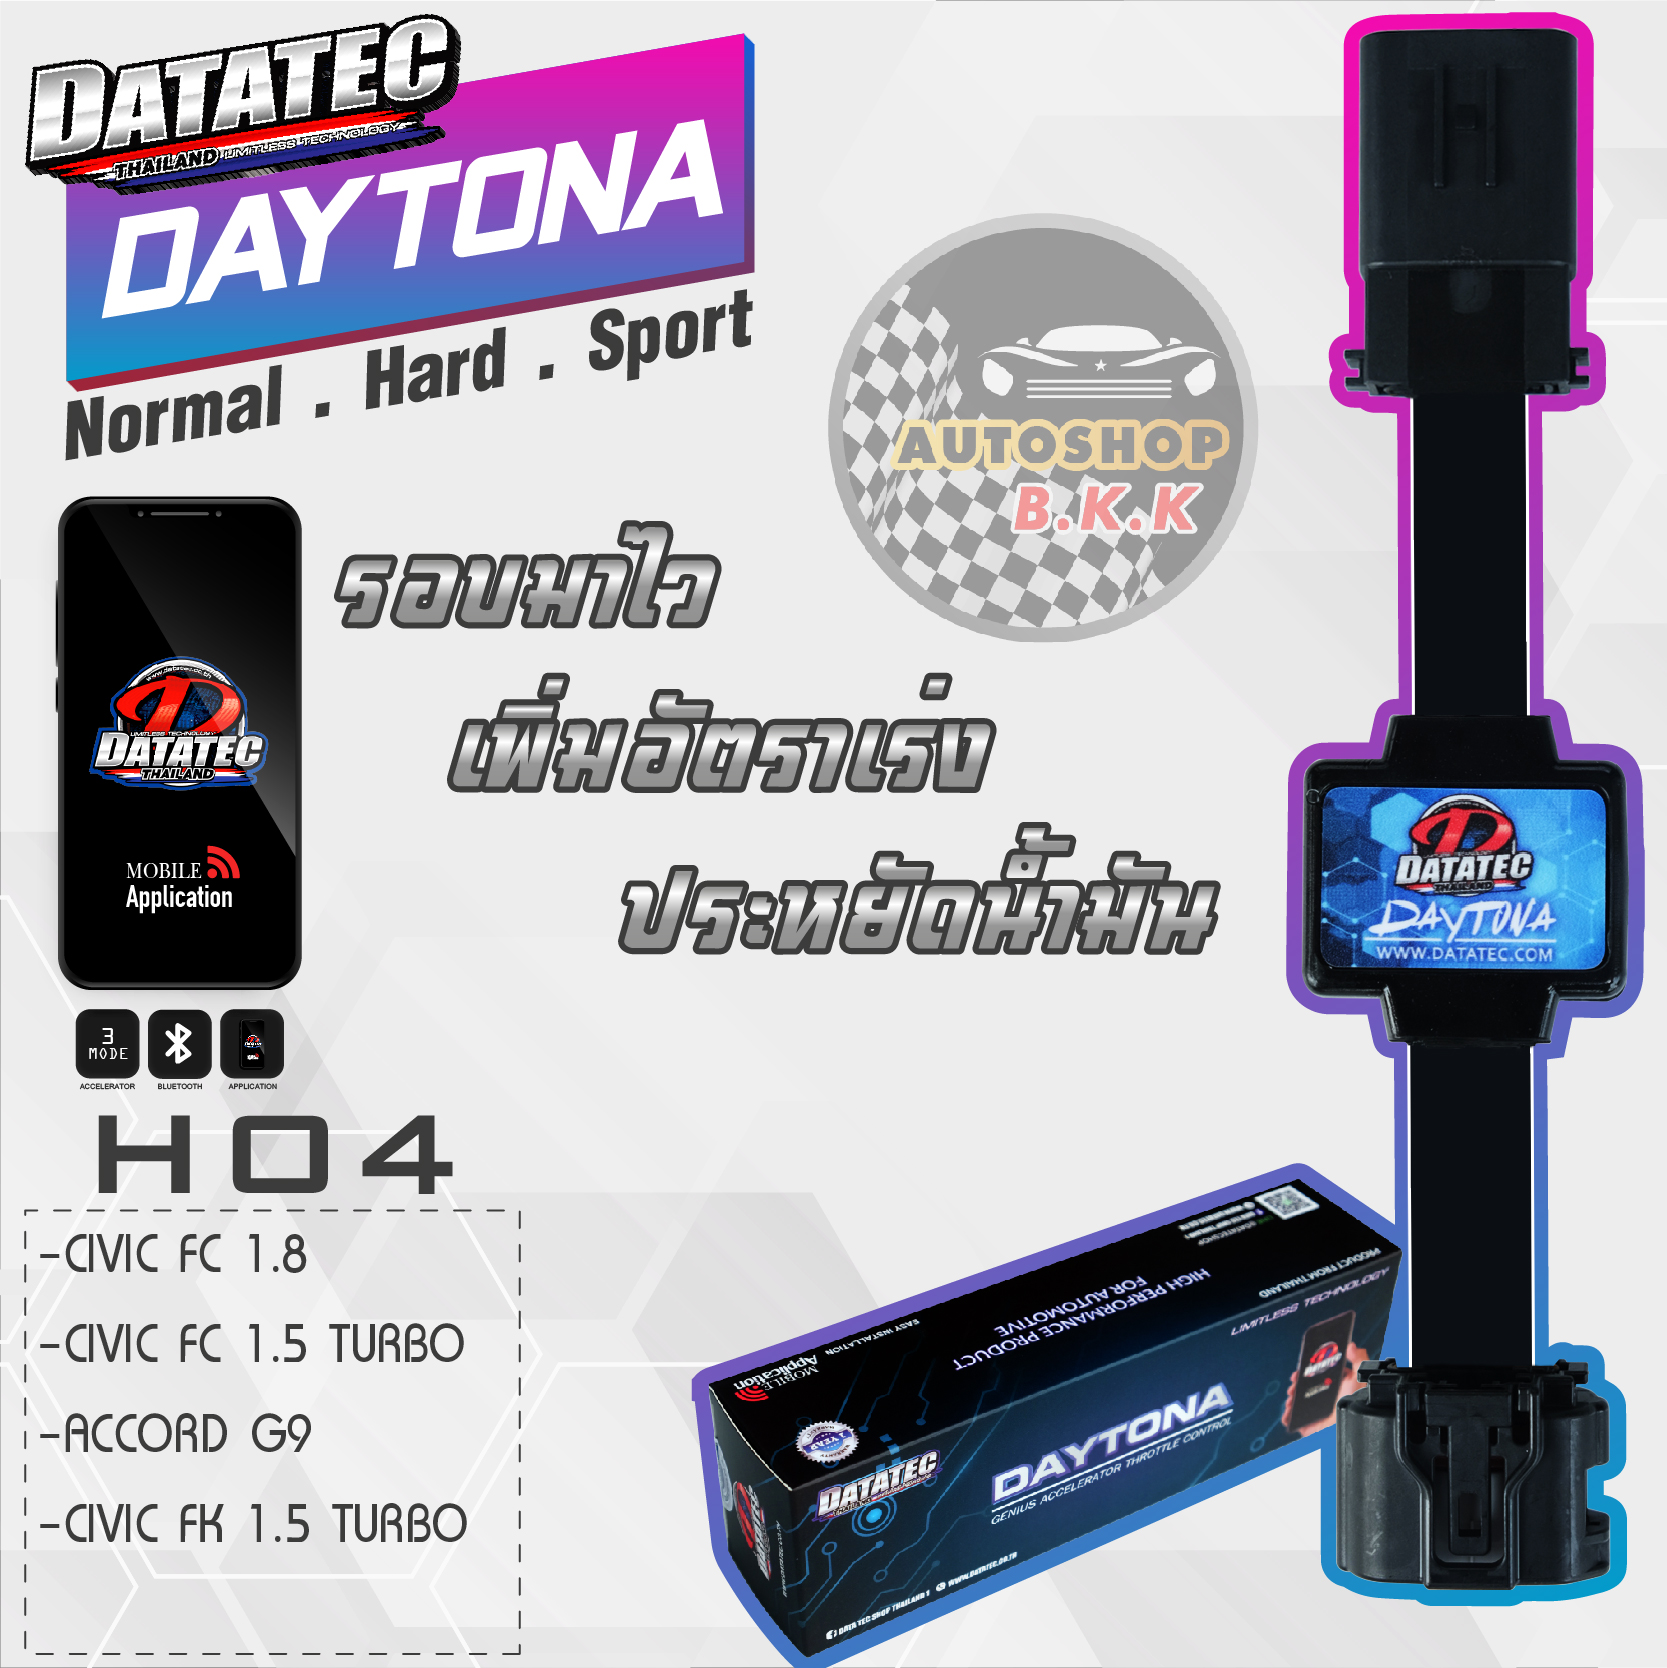 คันเร่งไฟฟ้า กล่องคันเร่งไฟฟ้า Datatec Daytona HO4 ปรับได้ 3 ระดับ คันเร่งไฟฟ้า ติดตั้งง่าย ภายใน 5 นาที